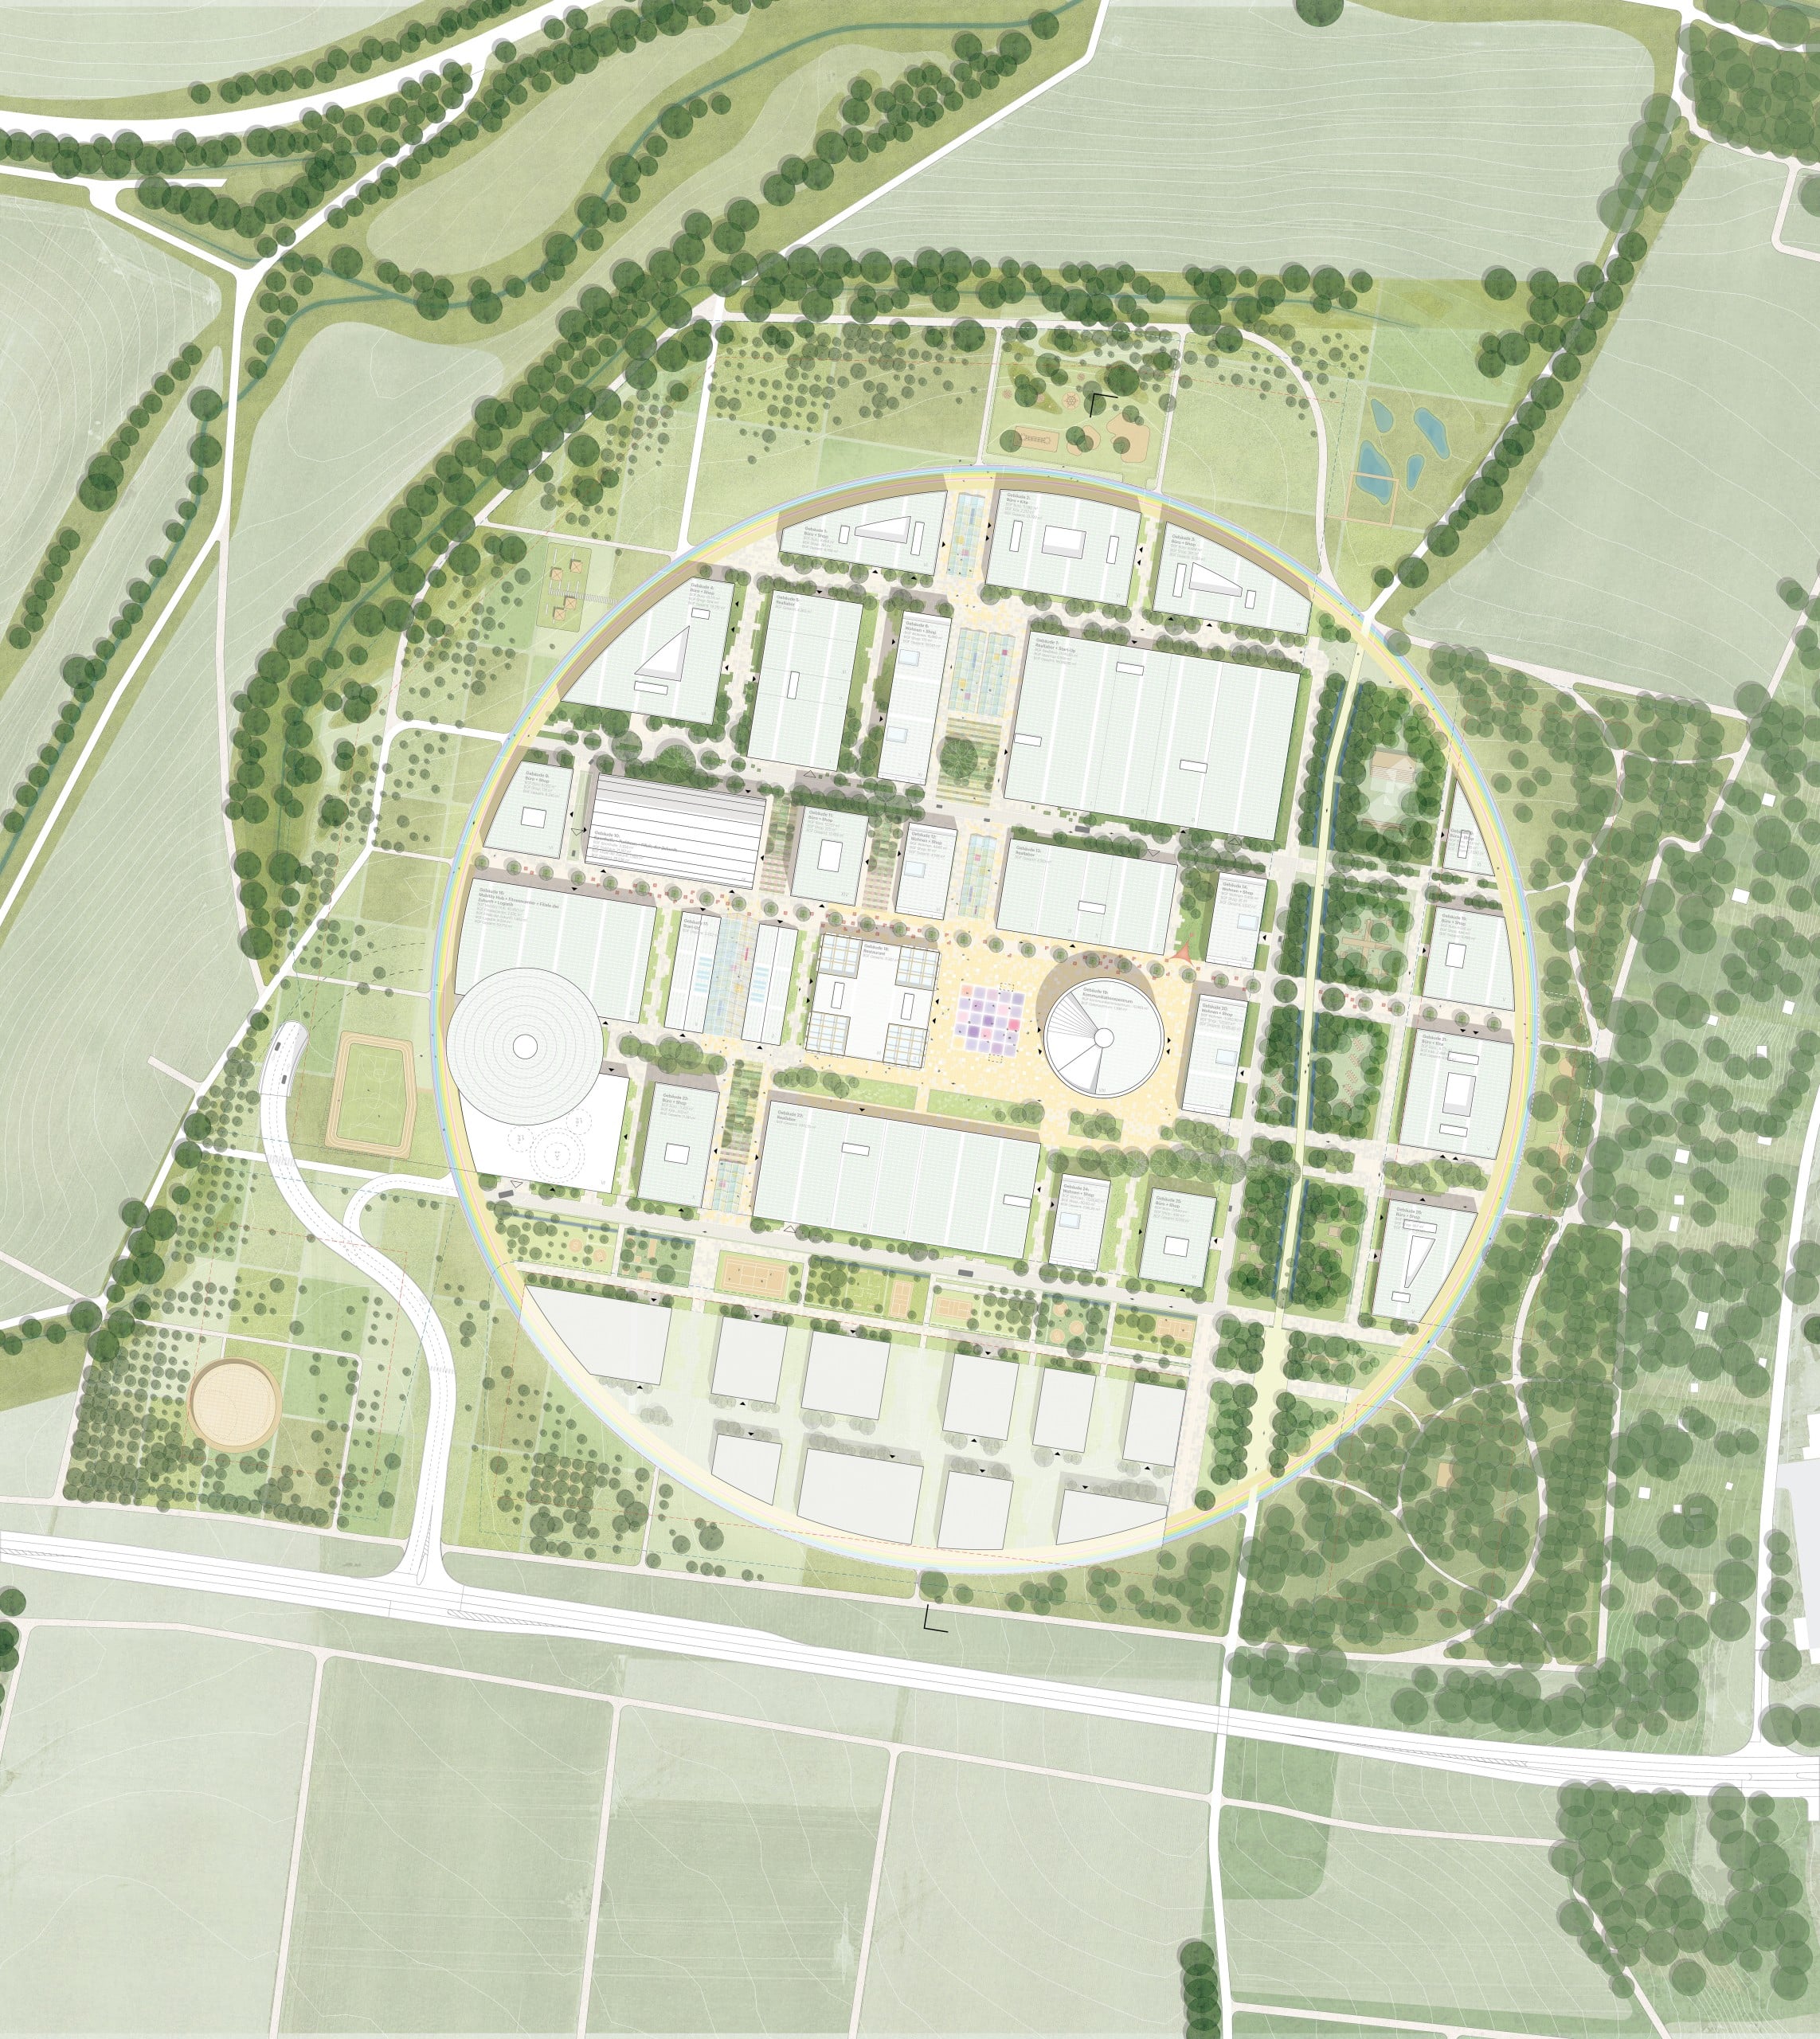 Der Plan für den KI-Park Heilbronn sieht ein kreisförmiges Areal mit 27 Meter hohen Gebäuden und viel Grün vor. Bildquelle: © MVRDV LOLA